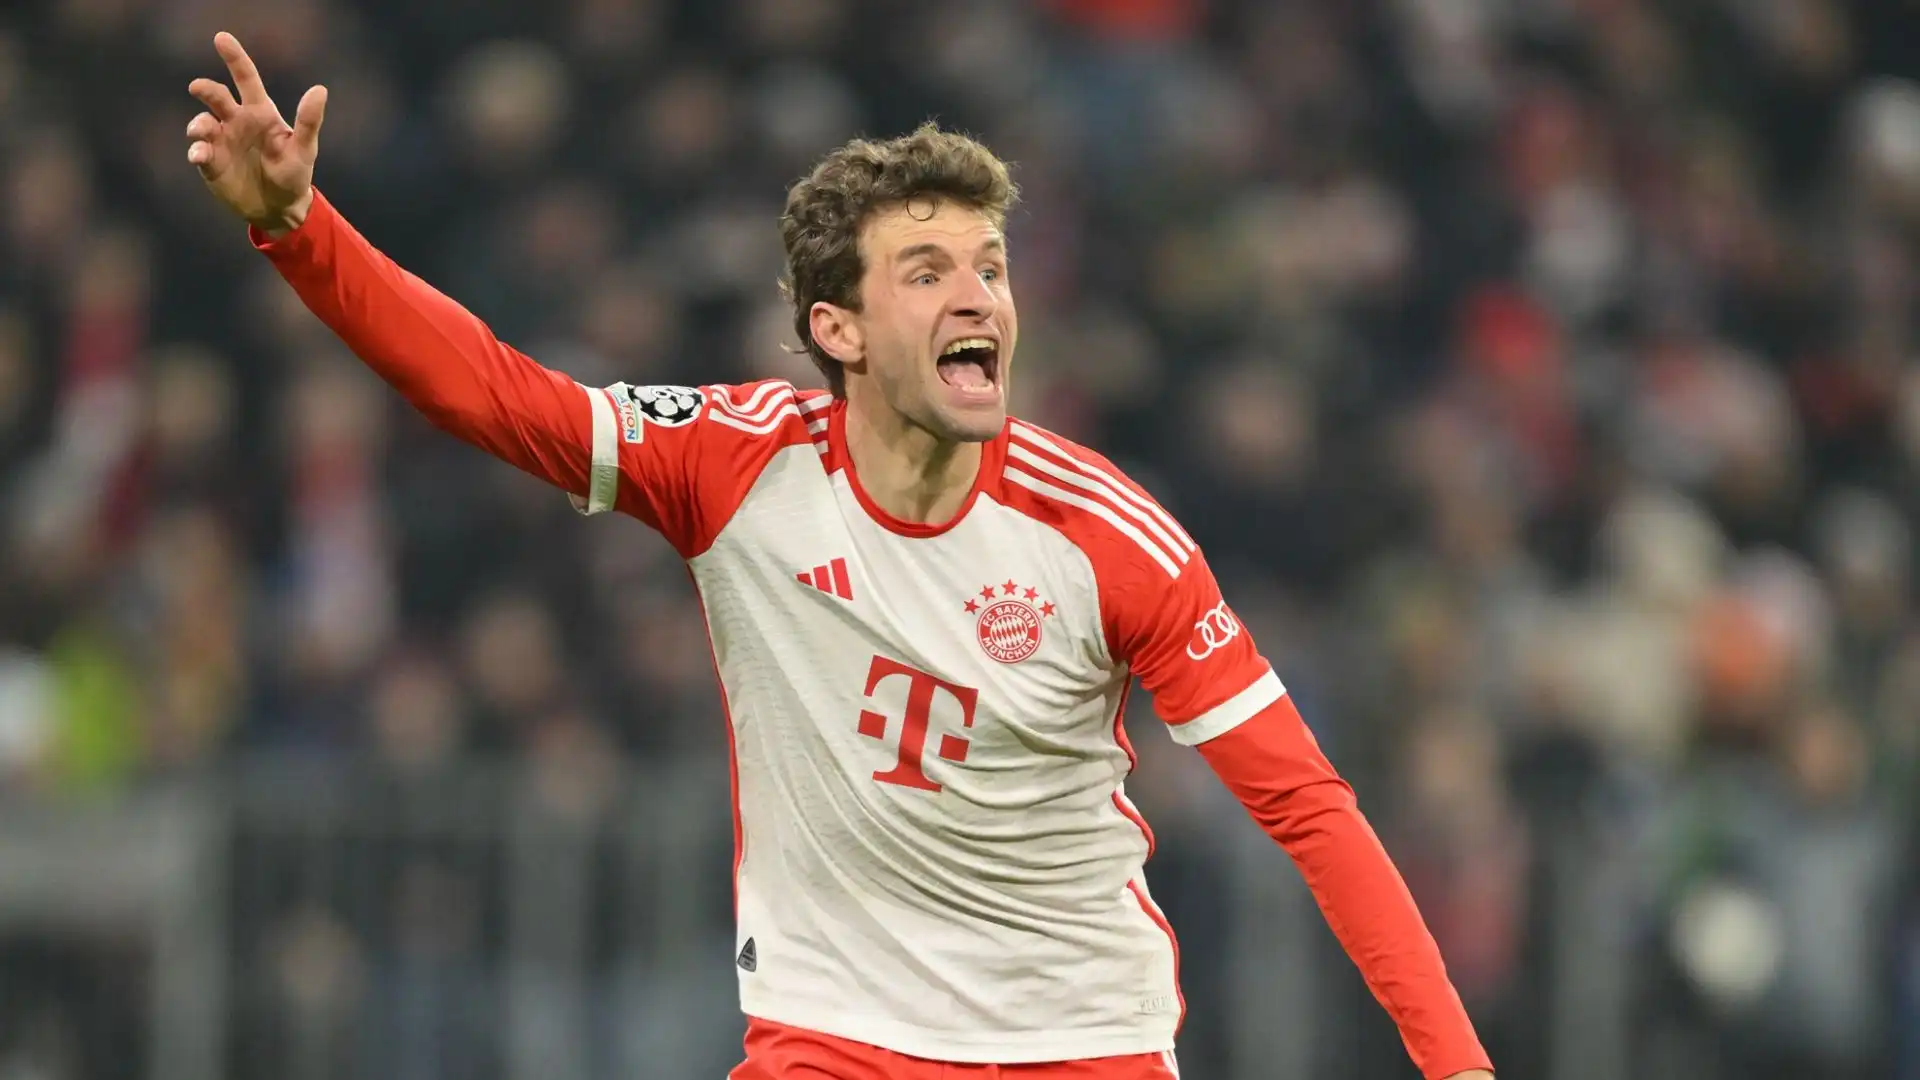 Anche se non è più un giocatore titolare, Müller continua ad avere un ruolo centrale nello spogliatoio